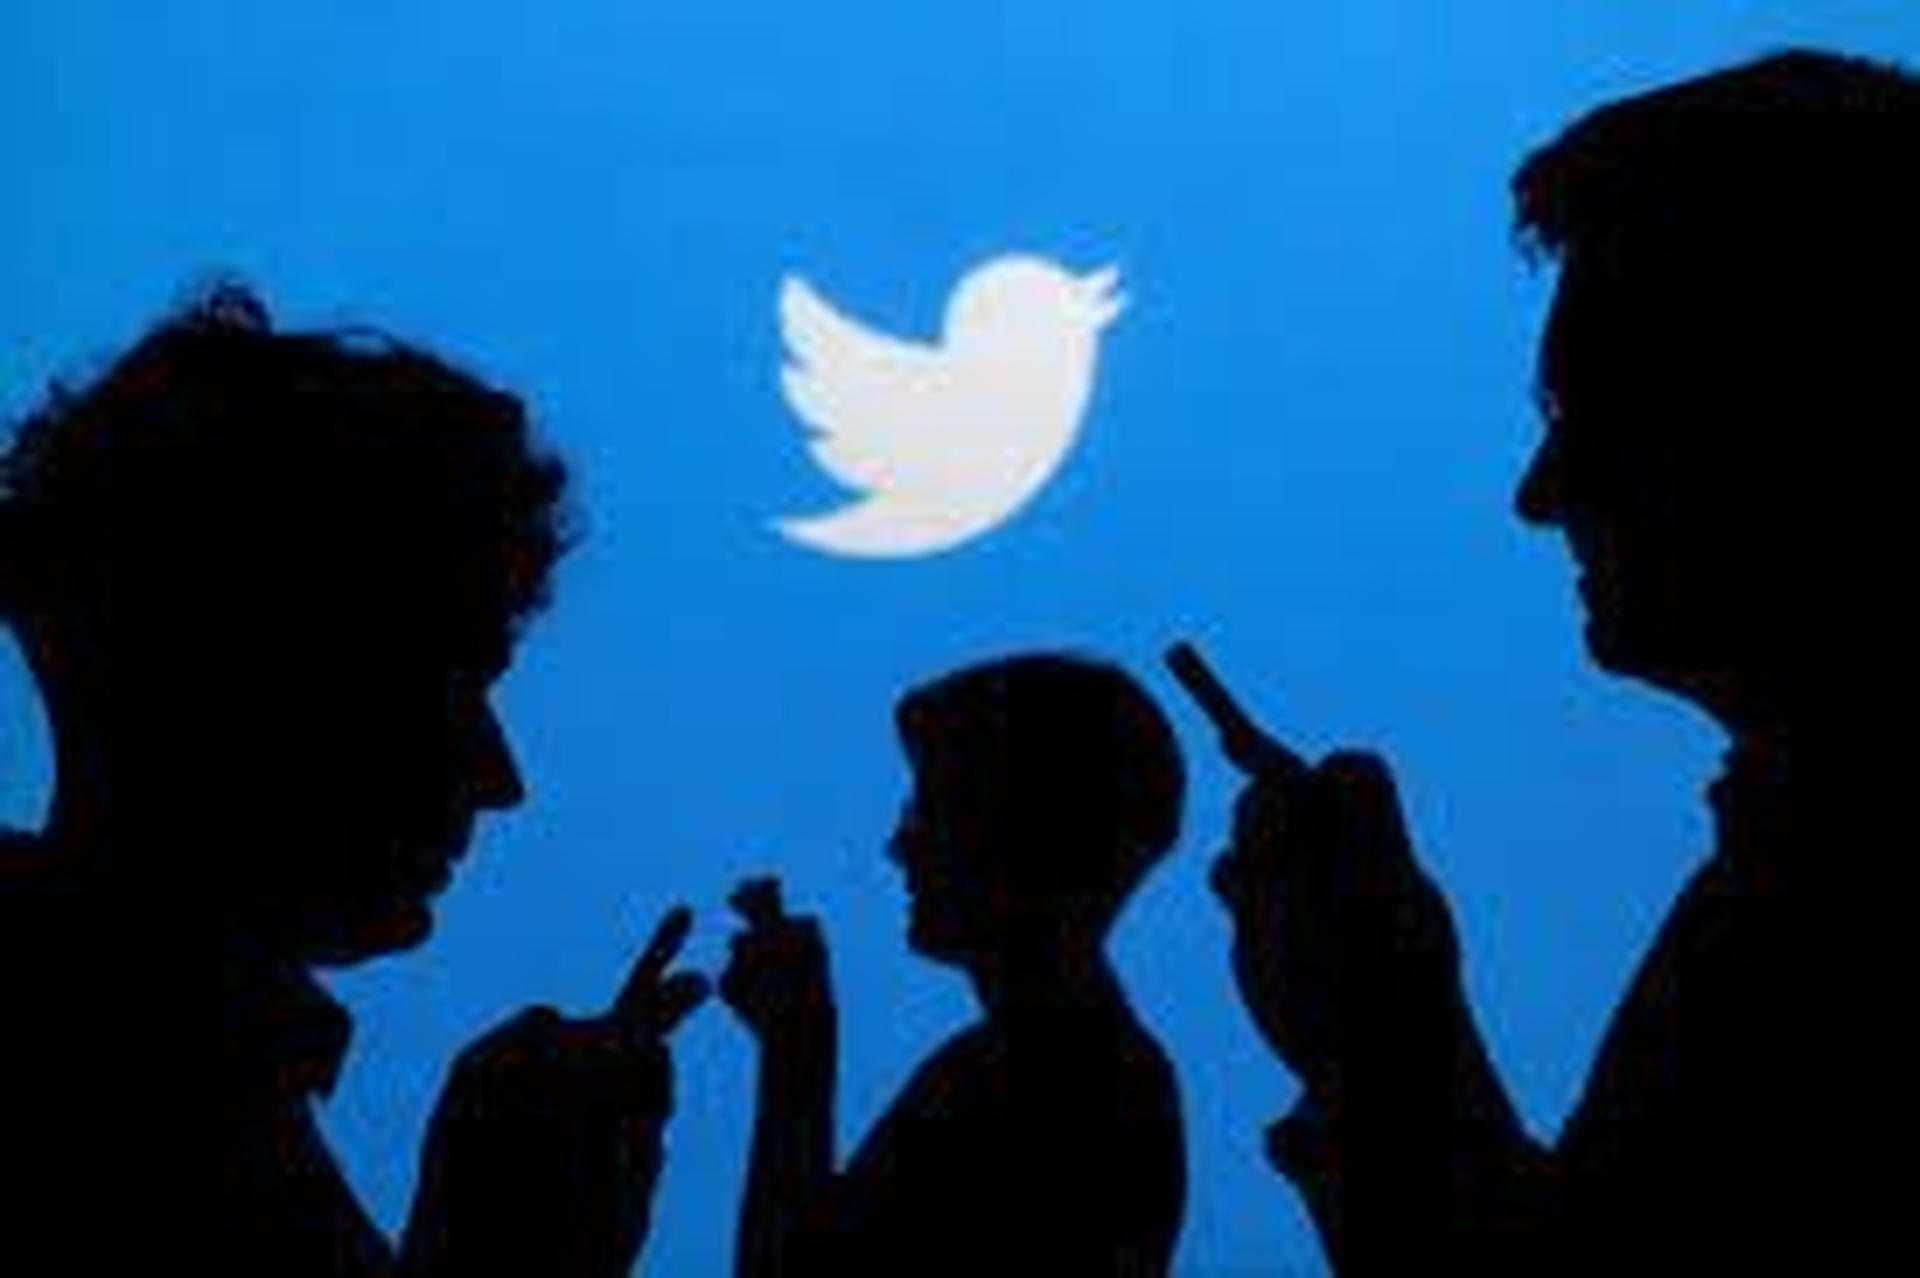 W tym artykule omówimy, że Twitter zapłaci 150 milionów dolarów za naruszenia prywatności, po wykorzystaniu danych bezpieczeństwa użytkowników do kierowania reklam, co stanowi naruszenie nakazu Federalnej Komisji Handlu z 2011 roku.